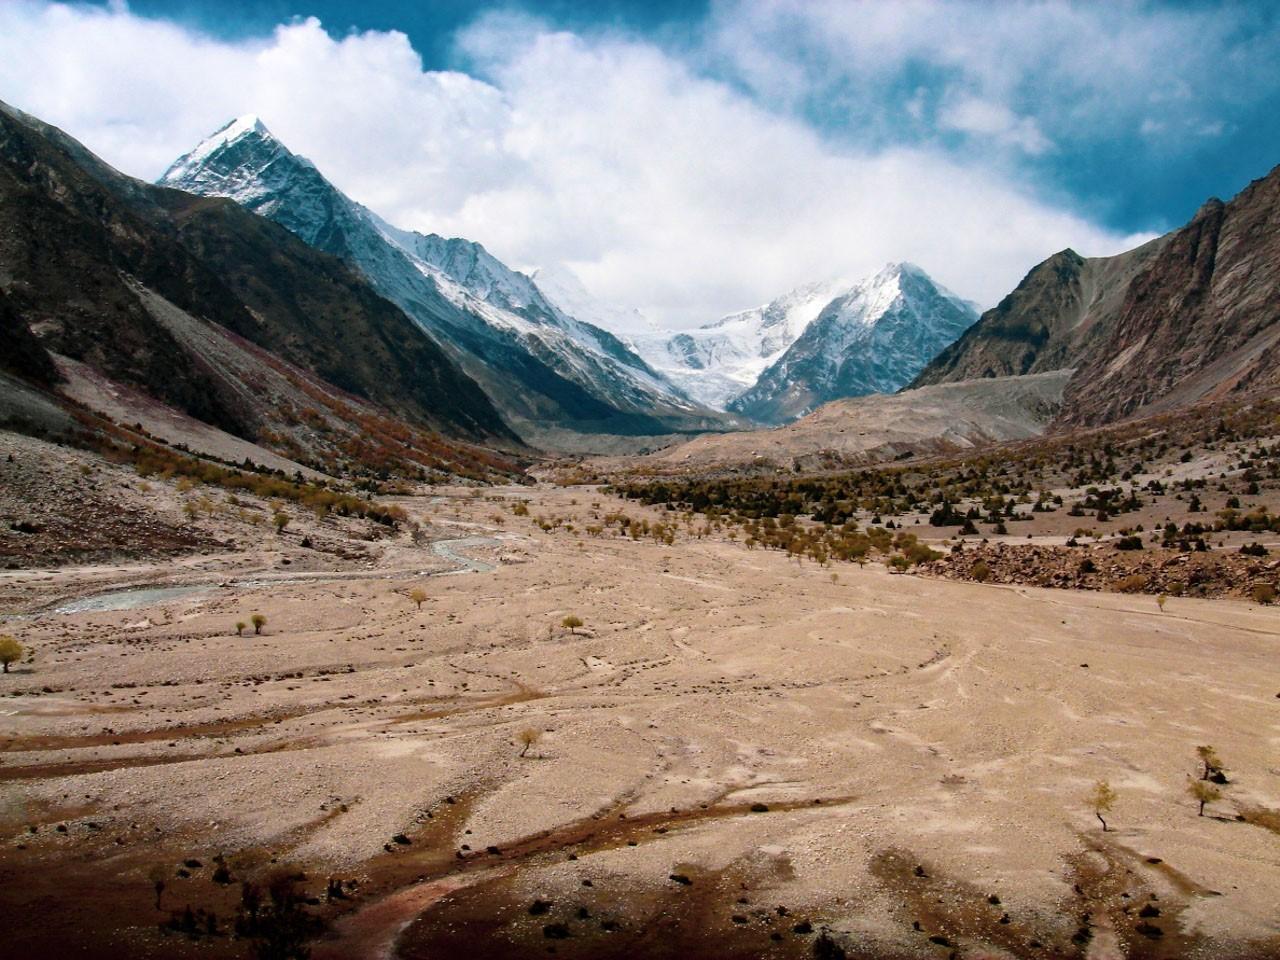 Trek from Rupal Valley to the Killer mountain, Nanga Parbat